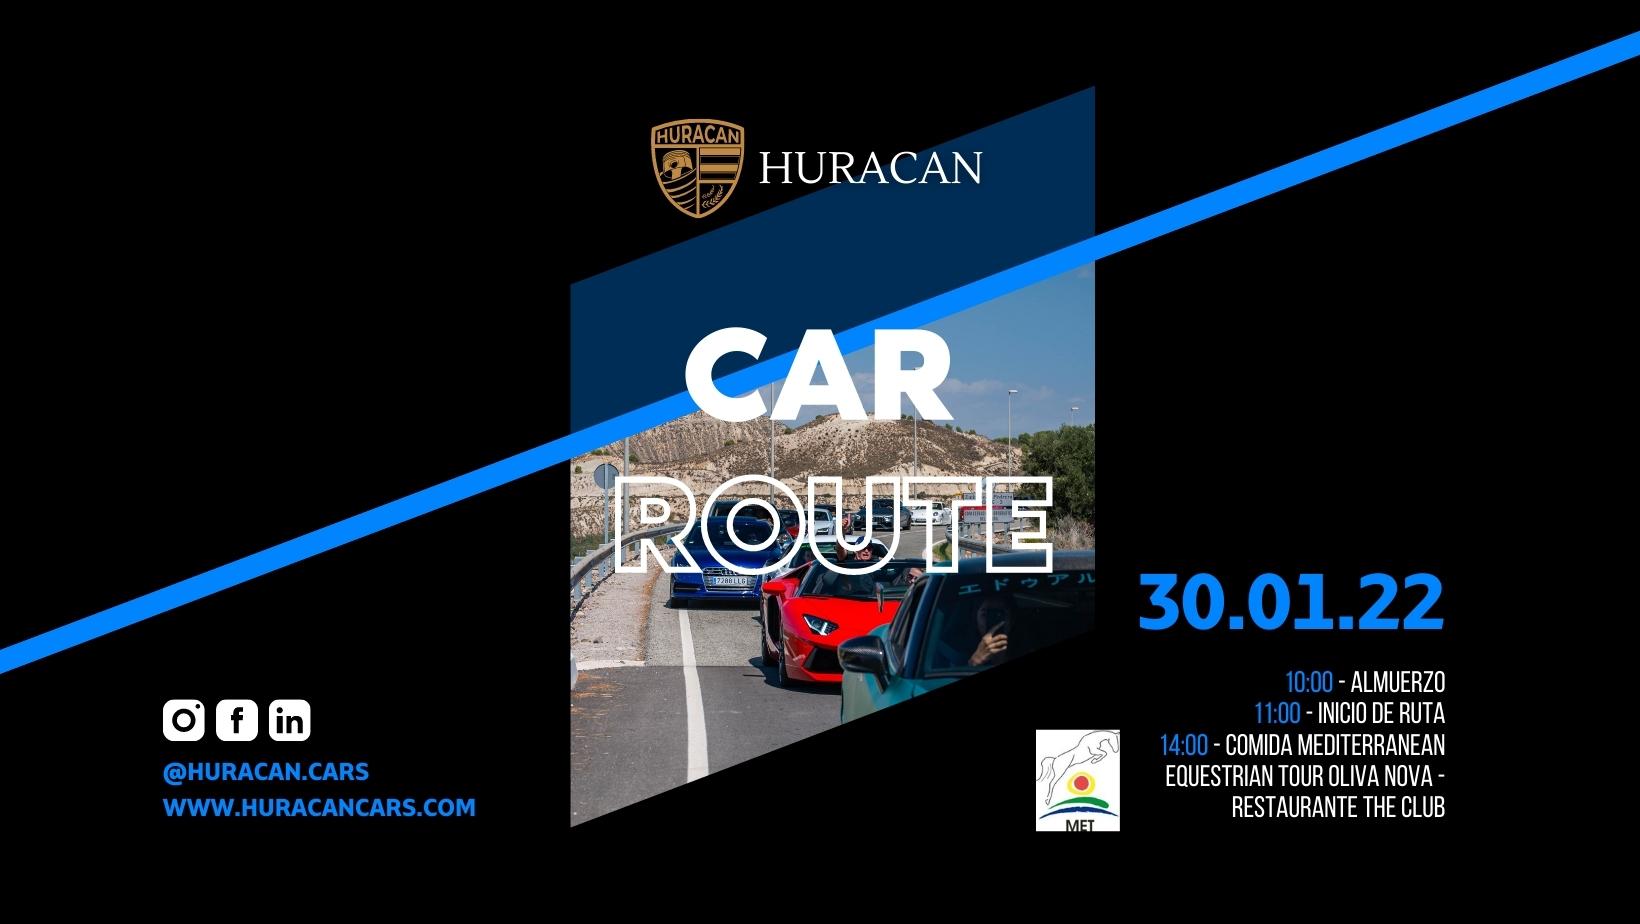 30.01.2022 | Ruta Huracan Cars + Comida en Mediterranean Equestrian Tour Oliva Nova